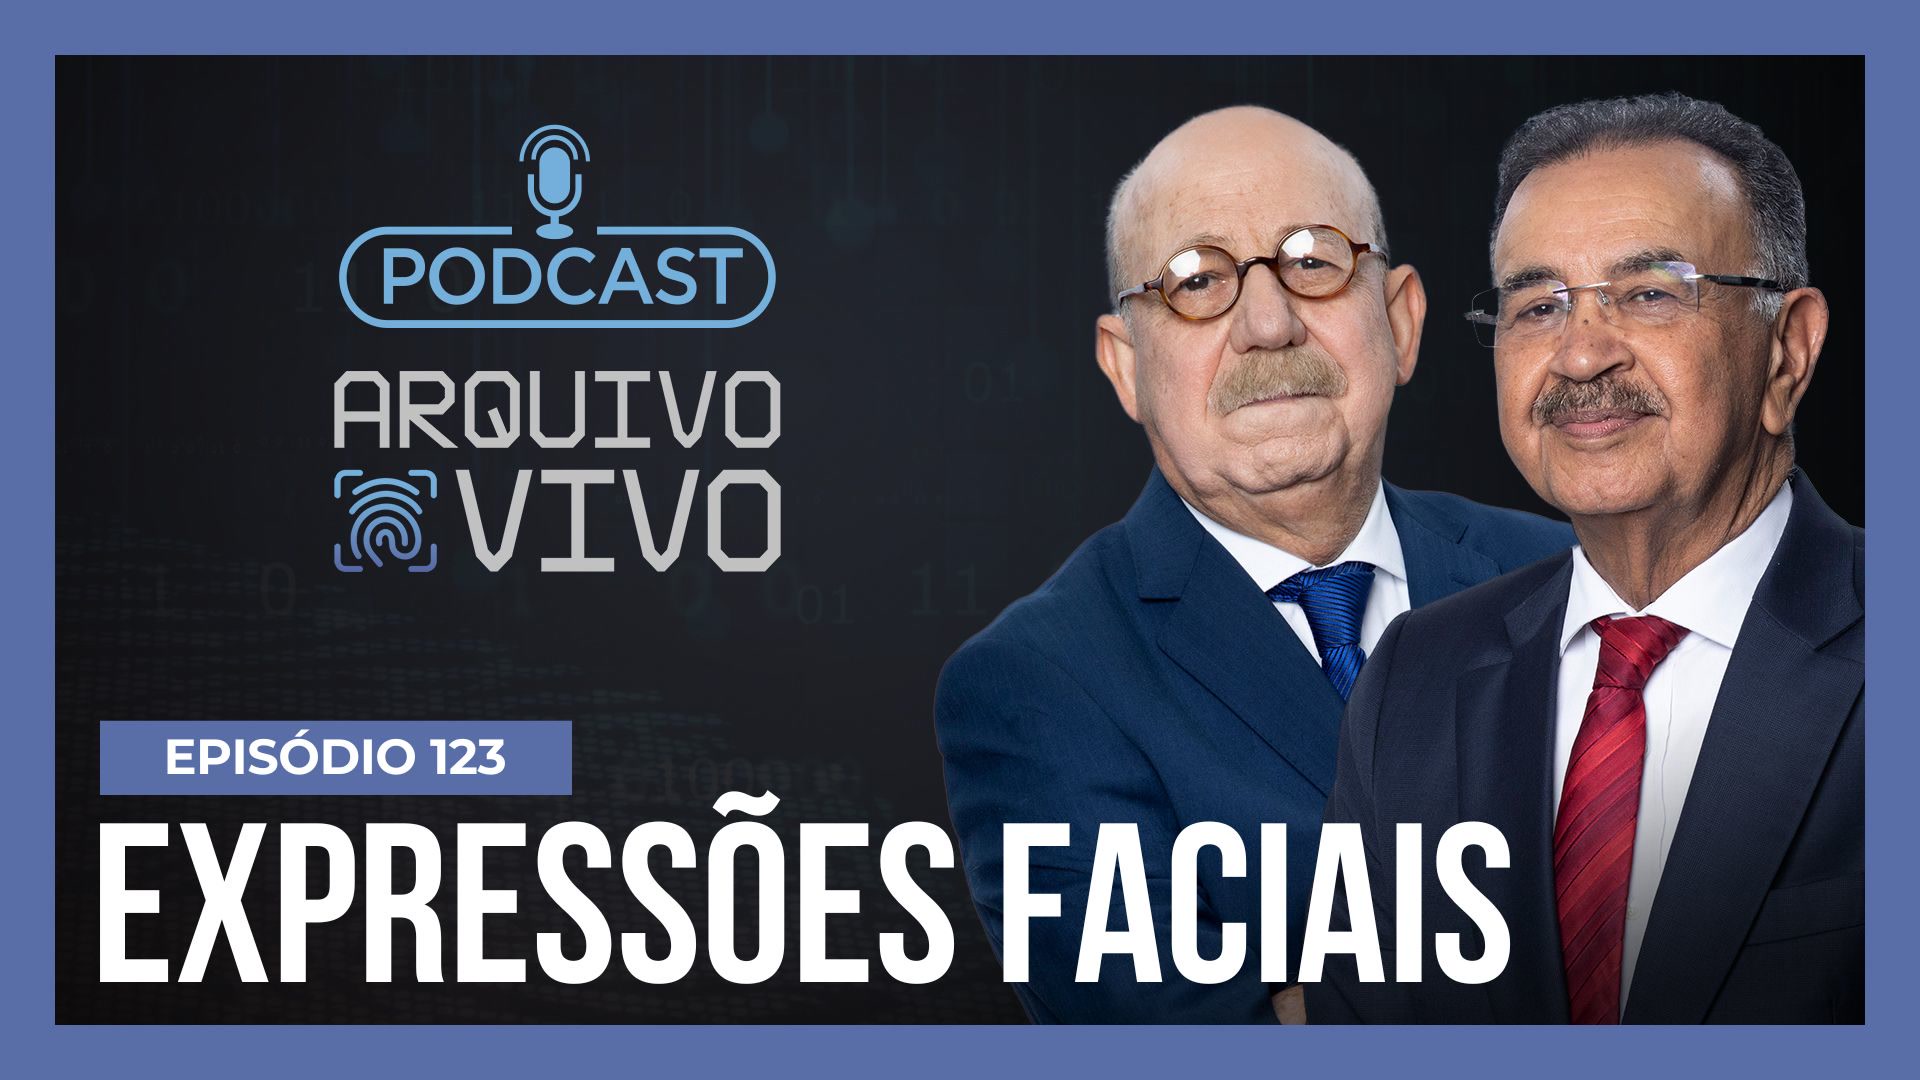 Vídeo: Podcast Arquivo Vivo : Carol Portilho explica como expressões faciais podem ajudar a desvendar crimes | Ep. 123